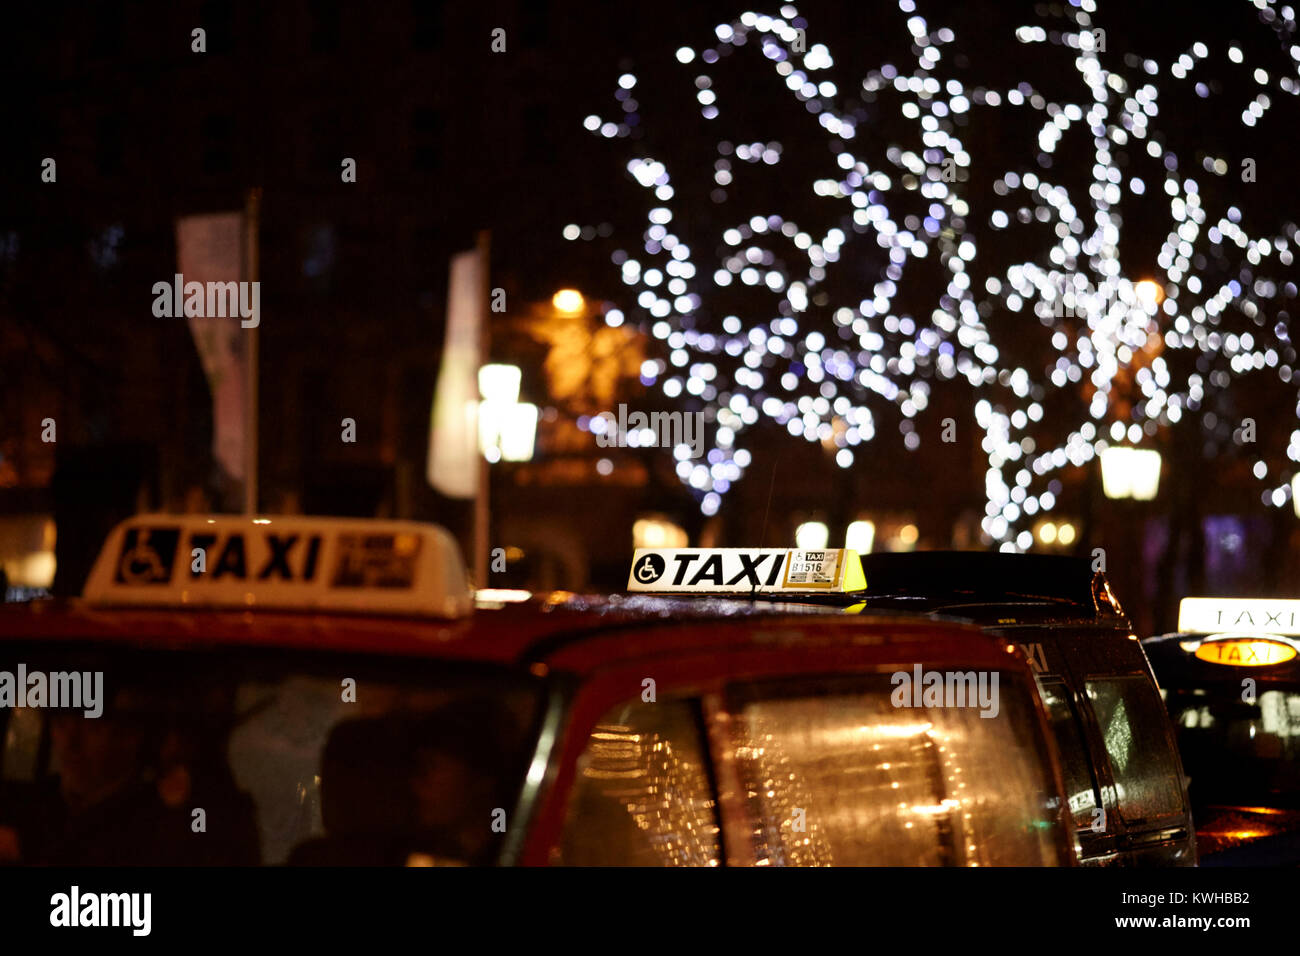 Indicazioni sulla parte superiore della london taxi I taxi ad un rango della cabina nel periodo di Natale belfast Irlanda del Nord Regno Unito Foto Stock